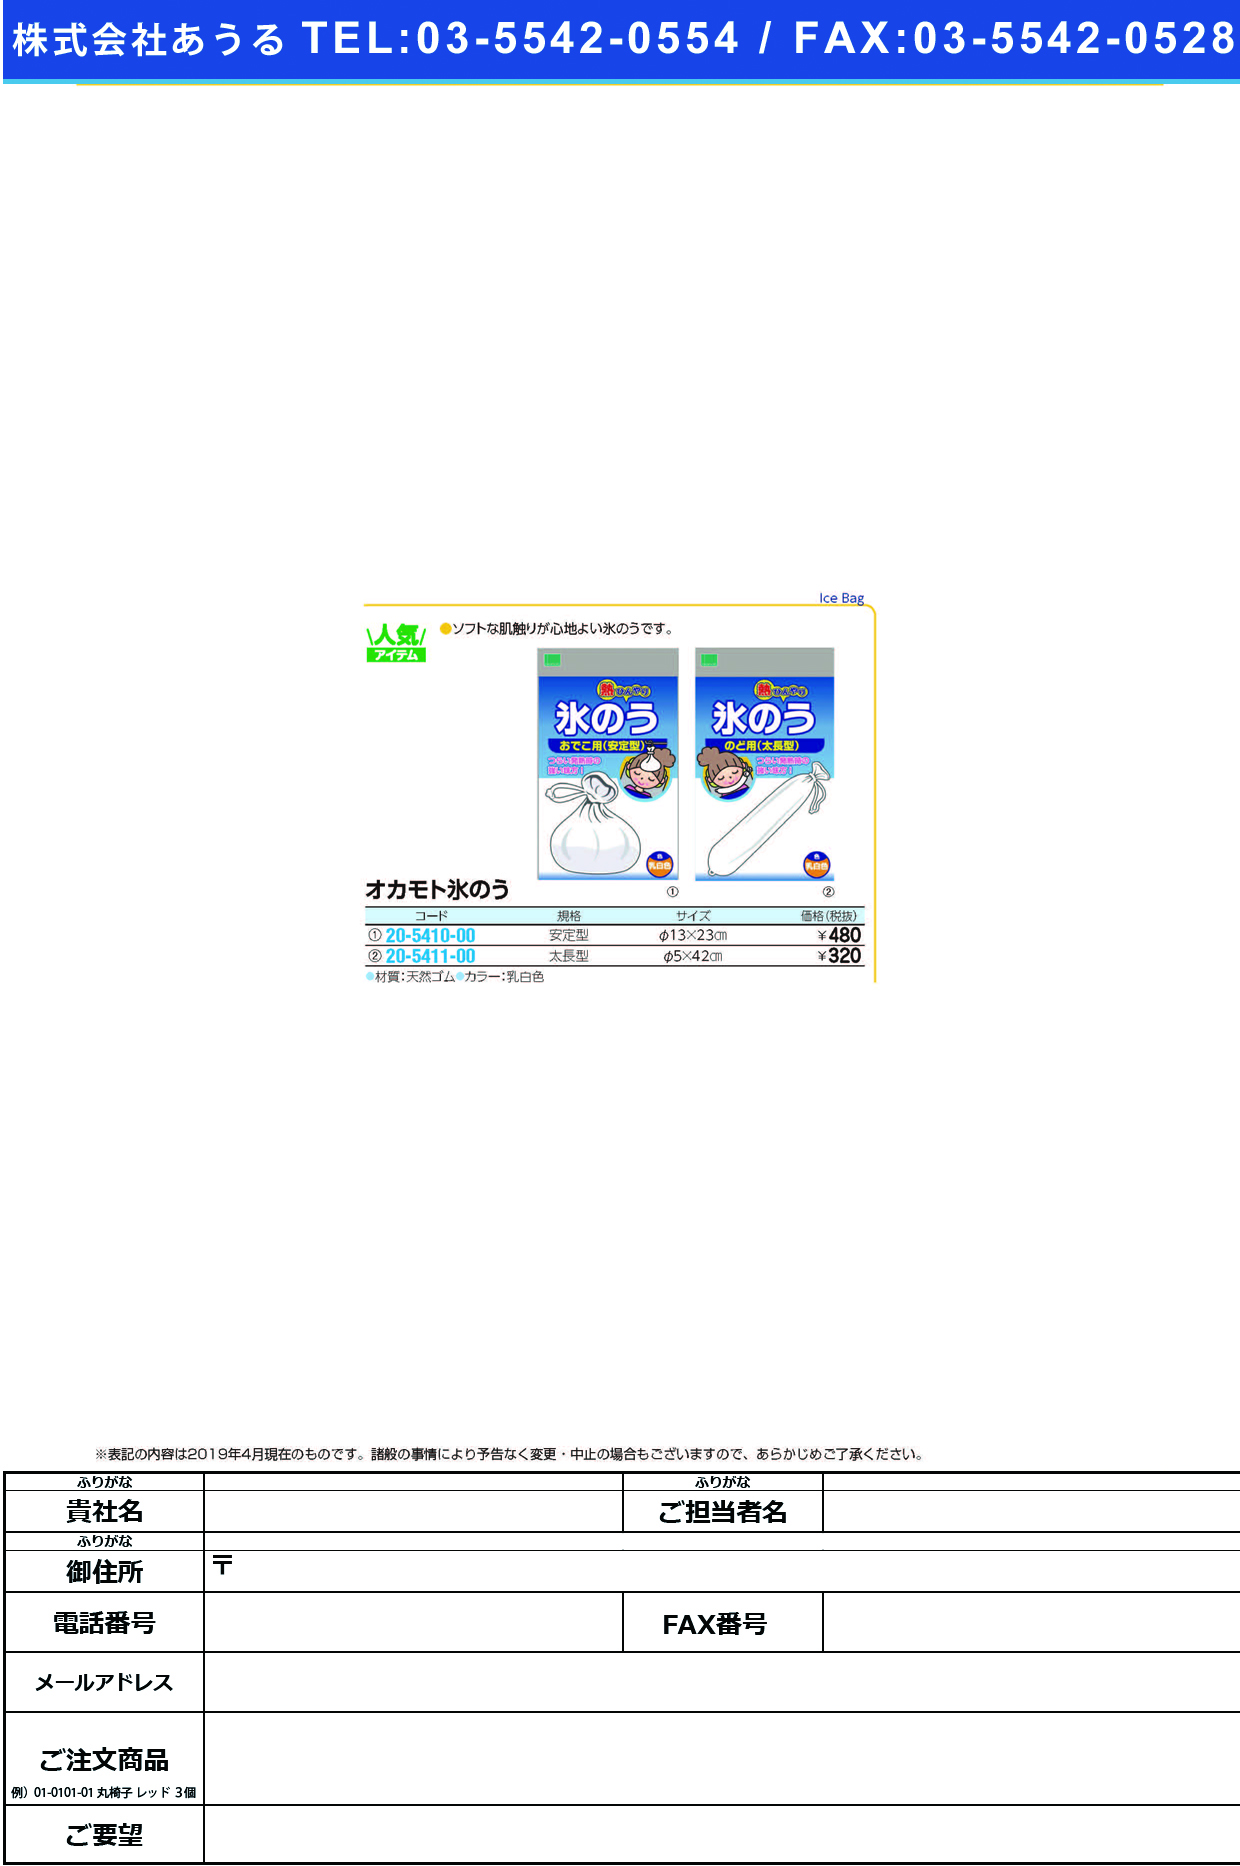 (20-5410-00)オカモト氷のう安定型 1530A ｵｶﾓﾋﾖｳﾉｳｱﾝﾃｲｶﾞﾀ(オカモト)【1個単位】【2019年カタログ商品】